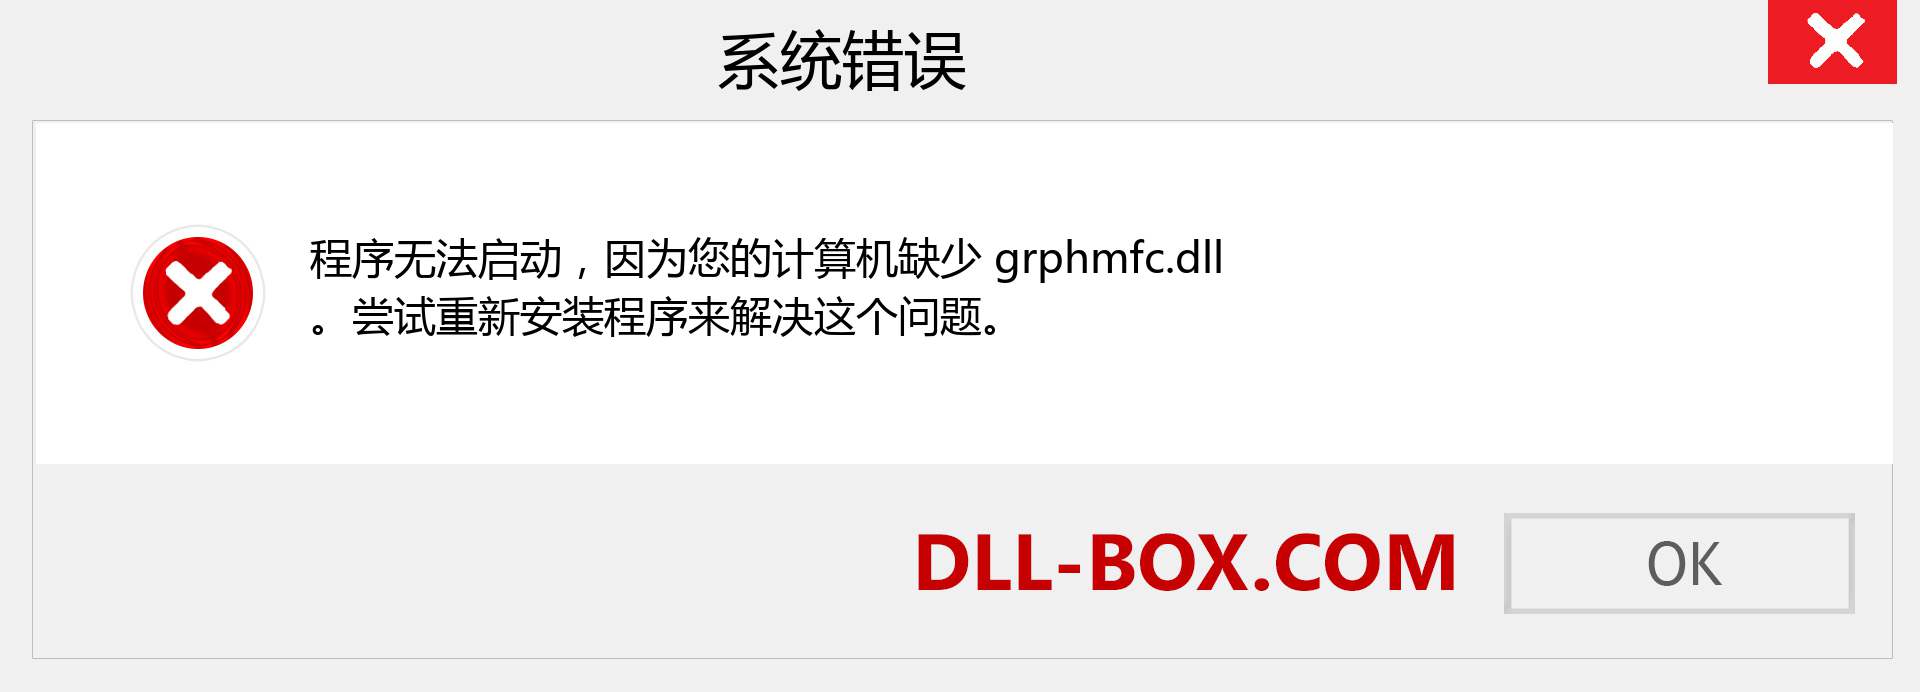 grphmfc.dll 文件丢失？。 适用于 Windows 7、8、10 的下载 - 修复 Windows、照片、图像上的 grphmfc dll 丢失错误